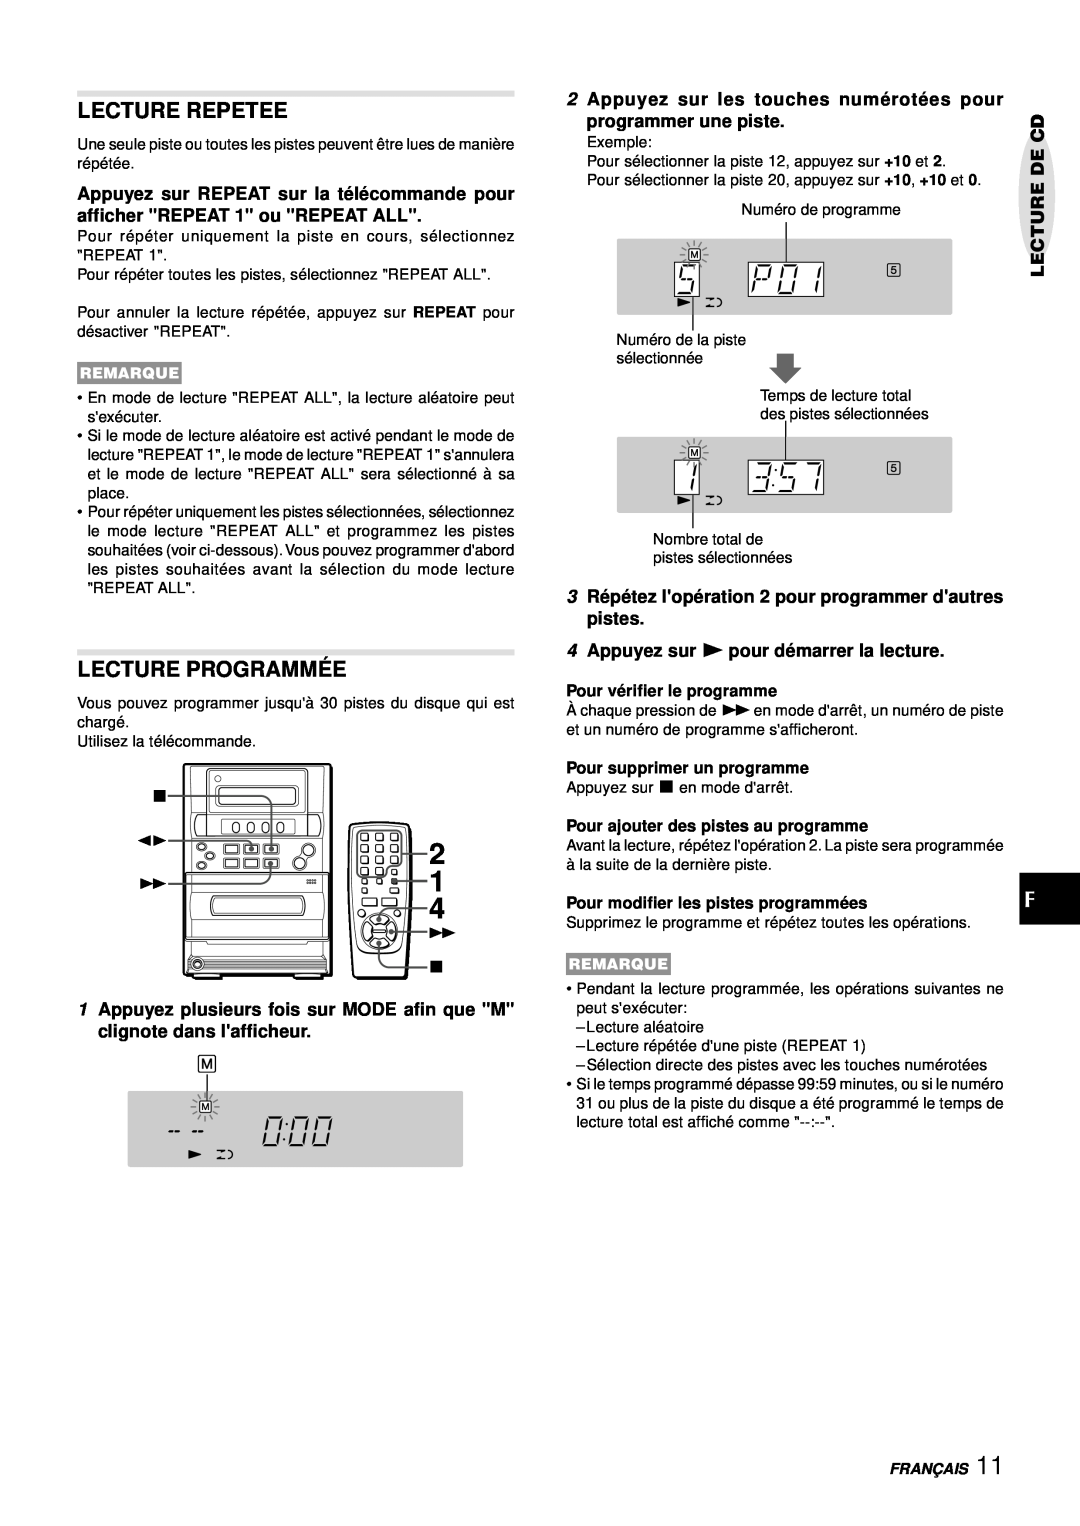 Aiwa LCX-357 manual Lecture Repetee, Lecture Programmé E, 2Appuyez sur les touches numé roté es pour, programmer une piste 